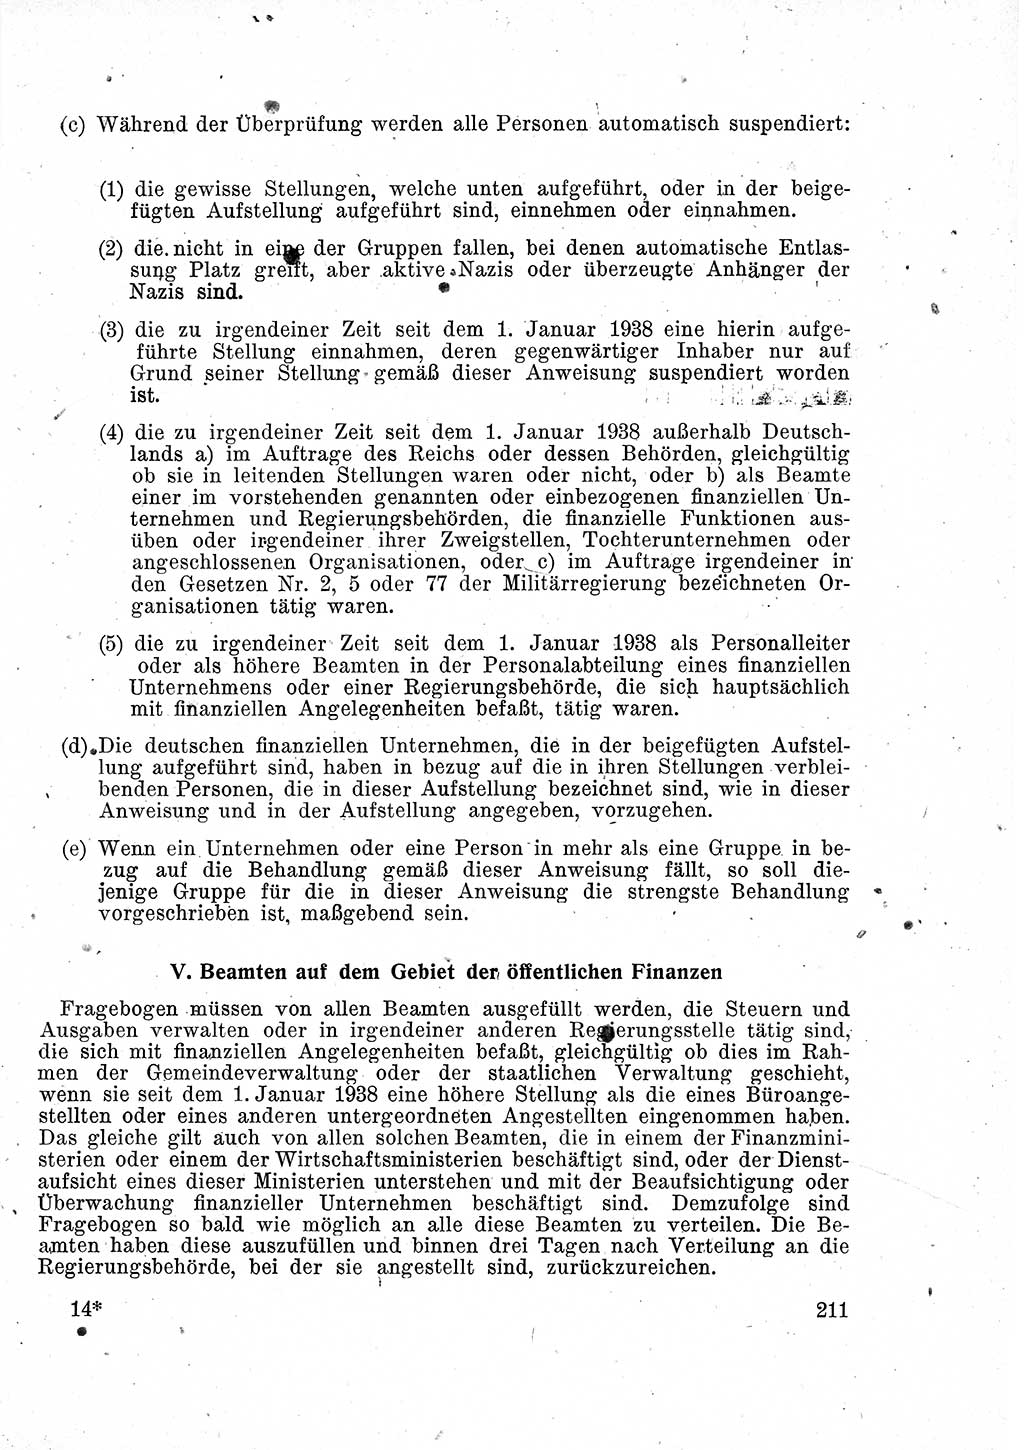 Das Recht der Besatzungsmacht (Deutschland), Proklamationen, Deklerationen, Verordnungen, Gesetze und Bekanntmachungen 1947, Seite 211 (R. Bes. Dtl. 1947, S. 211)